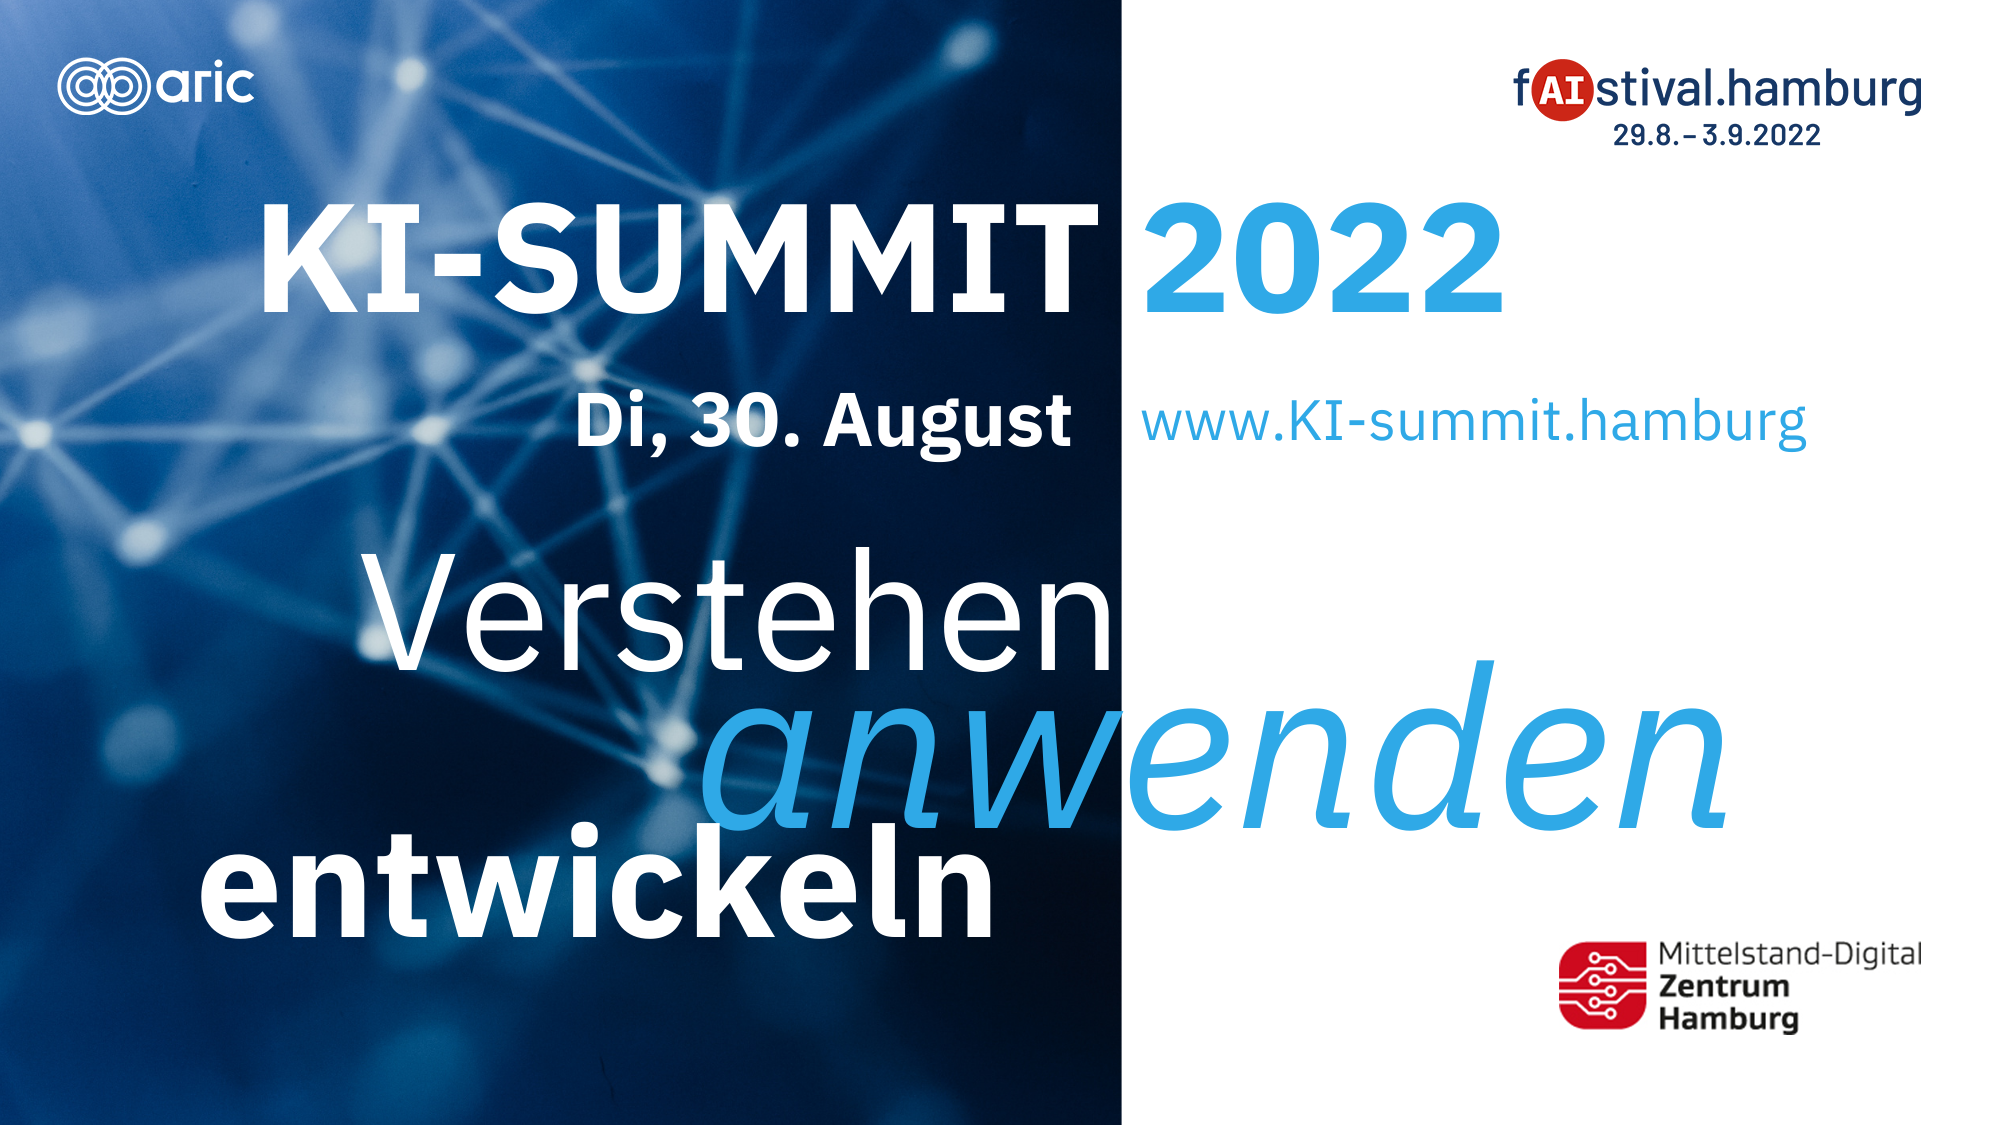 KI-Summit 2022 - Di, 30. August www.ki-summit.hamburg - Verstehen - anwenden - entwickeln